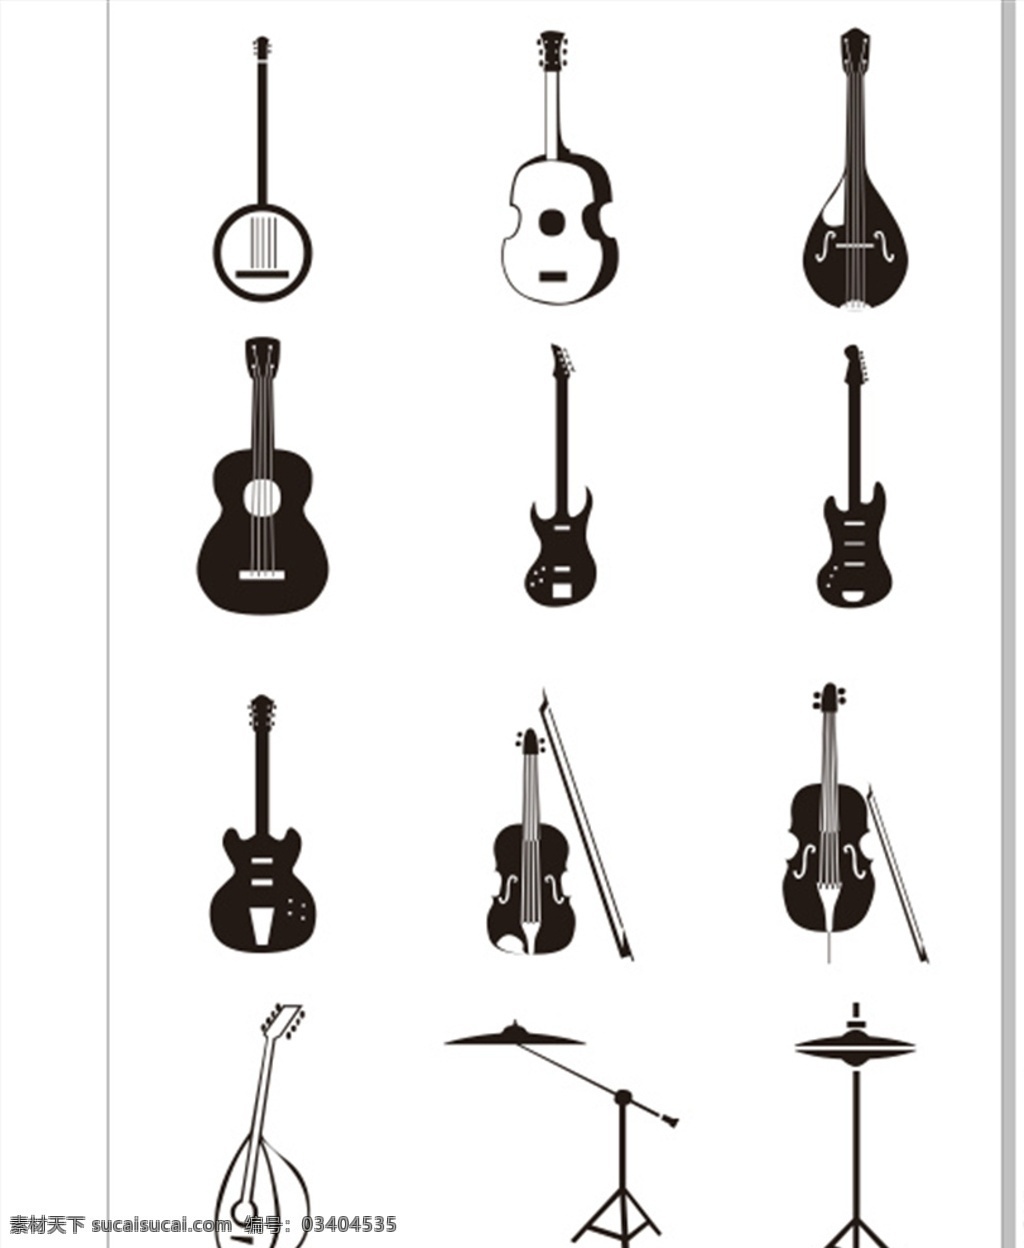 各式各样 音乐器材 设计素材 元素素材 矢量图 矢量 矢量图设计 音乐素材 音乐器材素材 器材素材 小提琴素材 琵琶矢量 各式提琴素材 文化艺术 舞蹈音乐